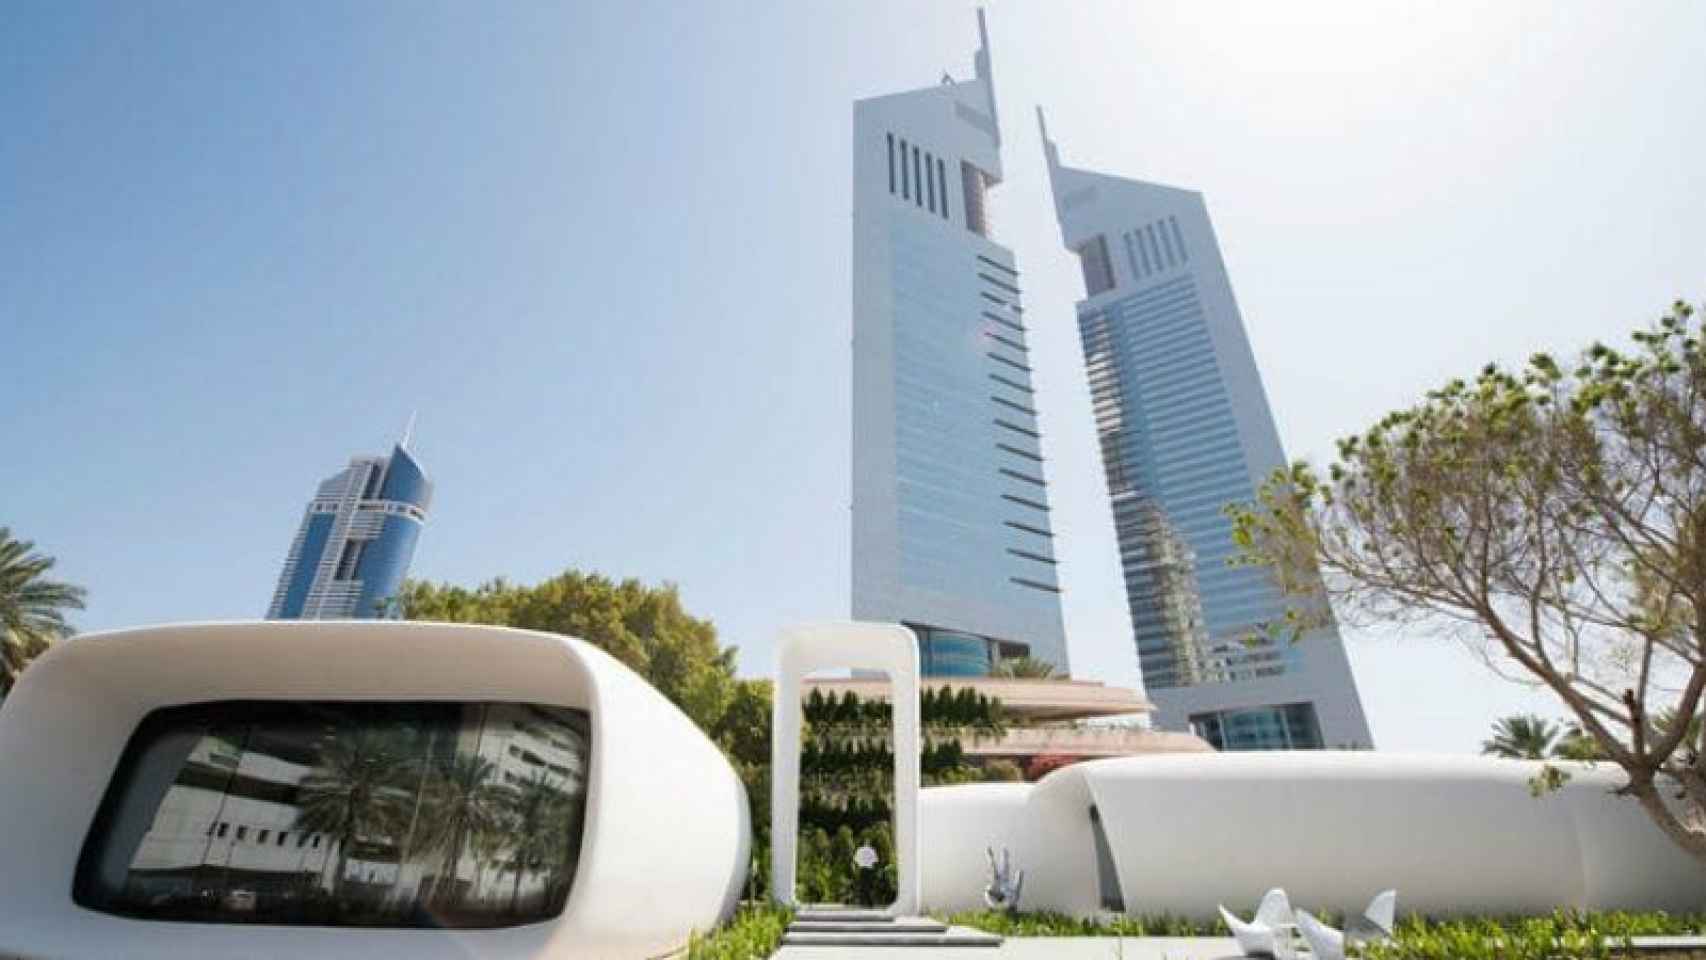 El edificio que aparece en la imagen se ha construido en el complejo Dubai Emirates Tower con el sistema 3D.